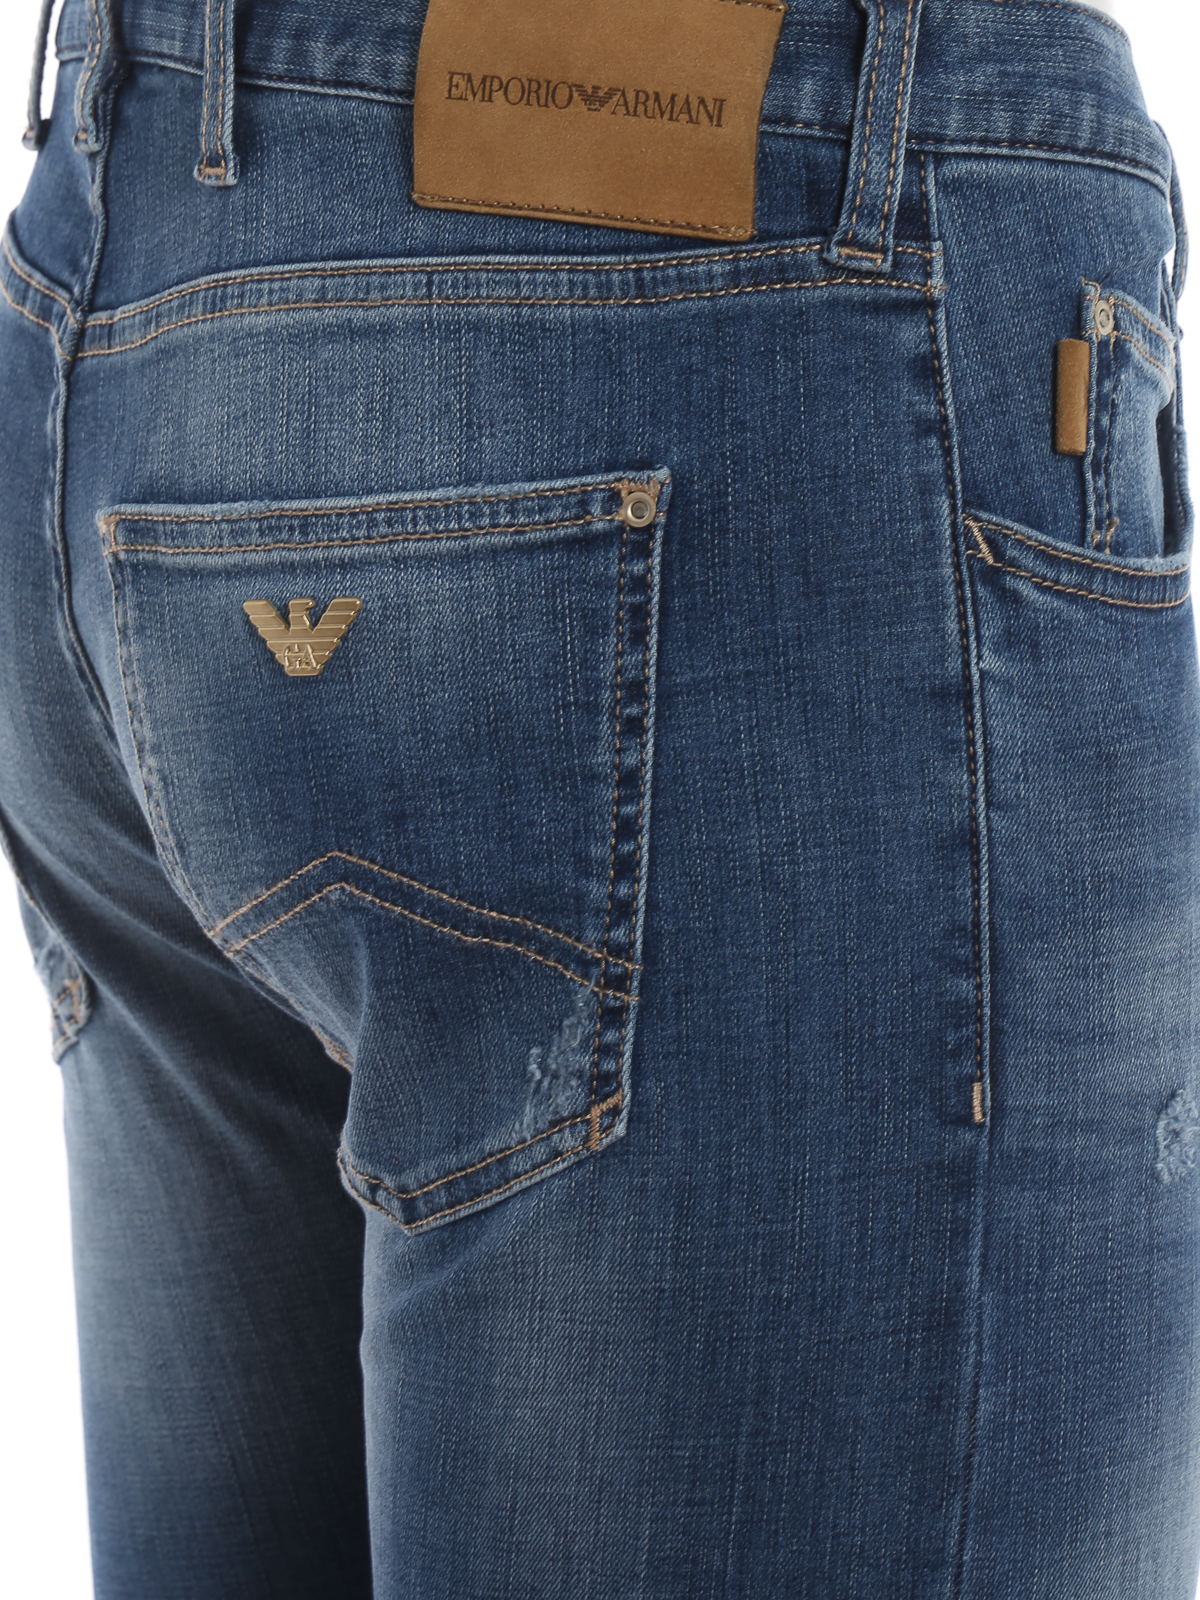 Jeans pitillos Emporio Armani - Vaqueros - - 3G1J101D5MZ0941